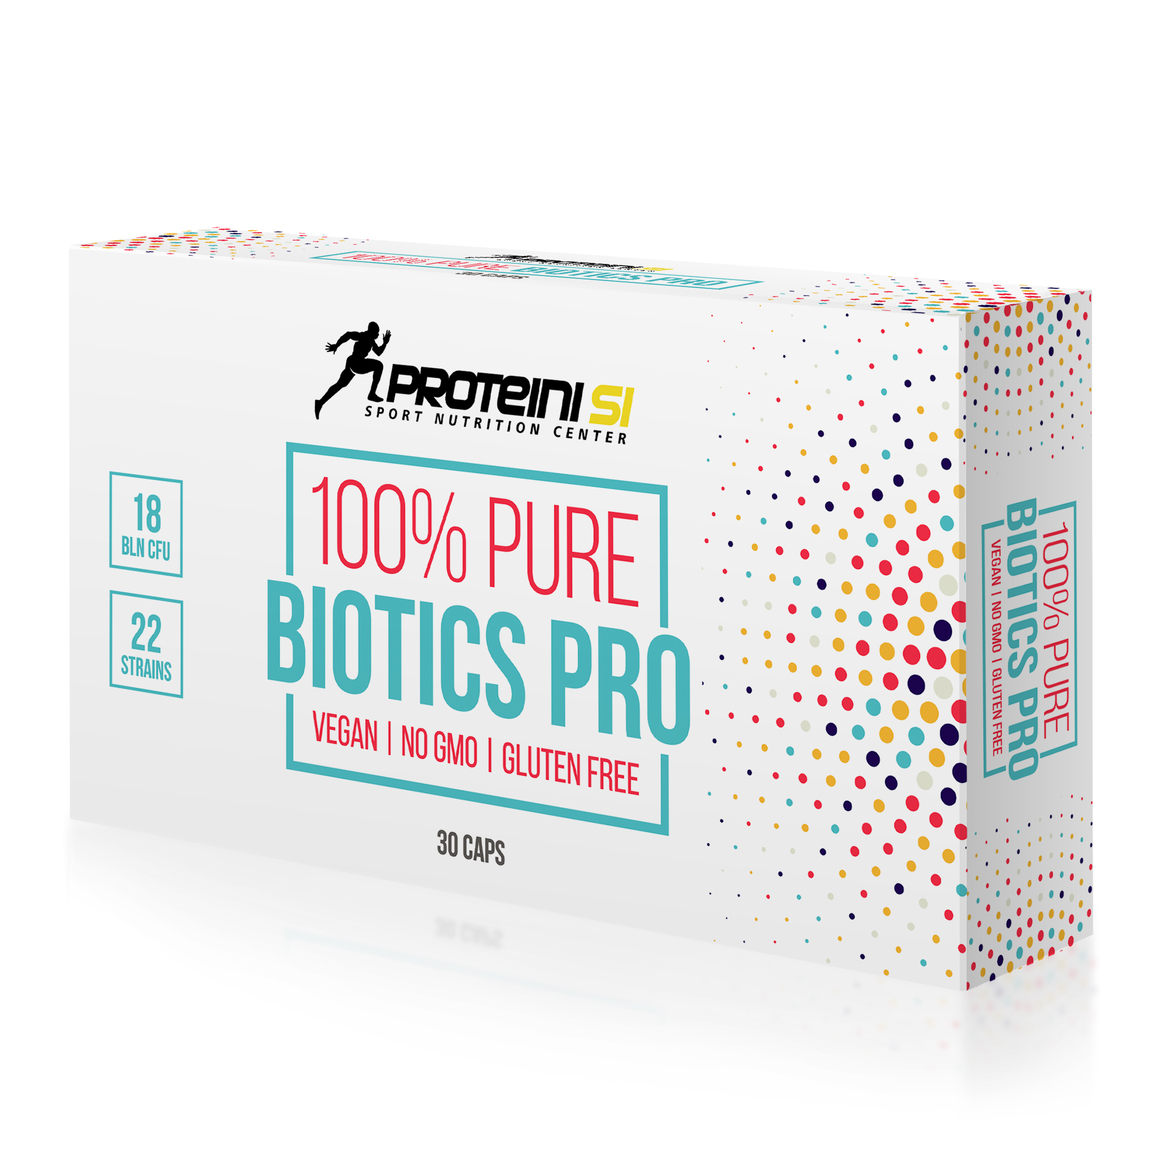 Proteini 100% Pure Biotics Pro 30 Kapseln